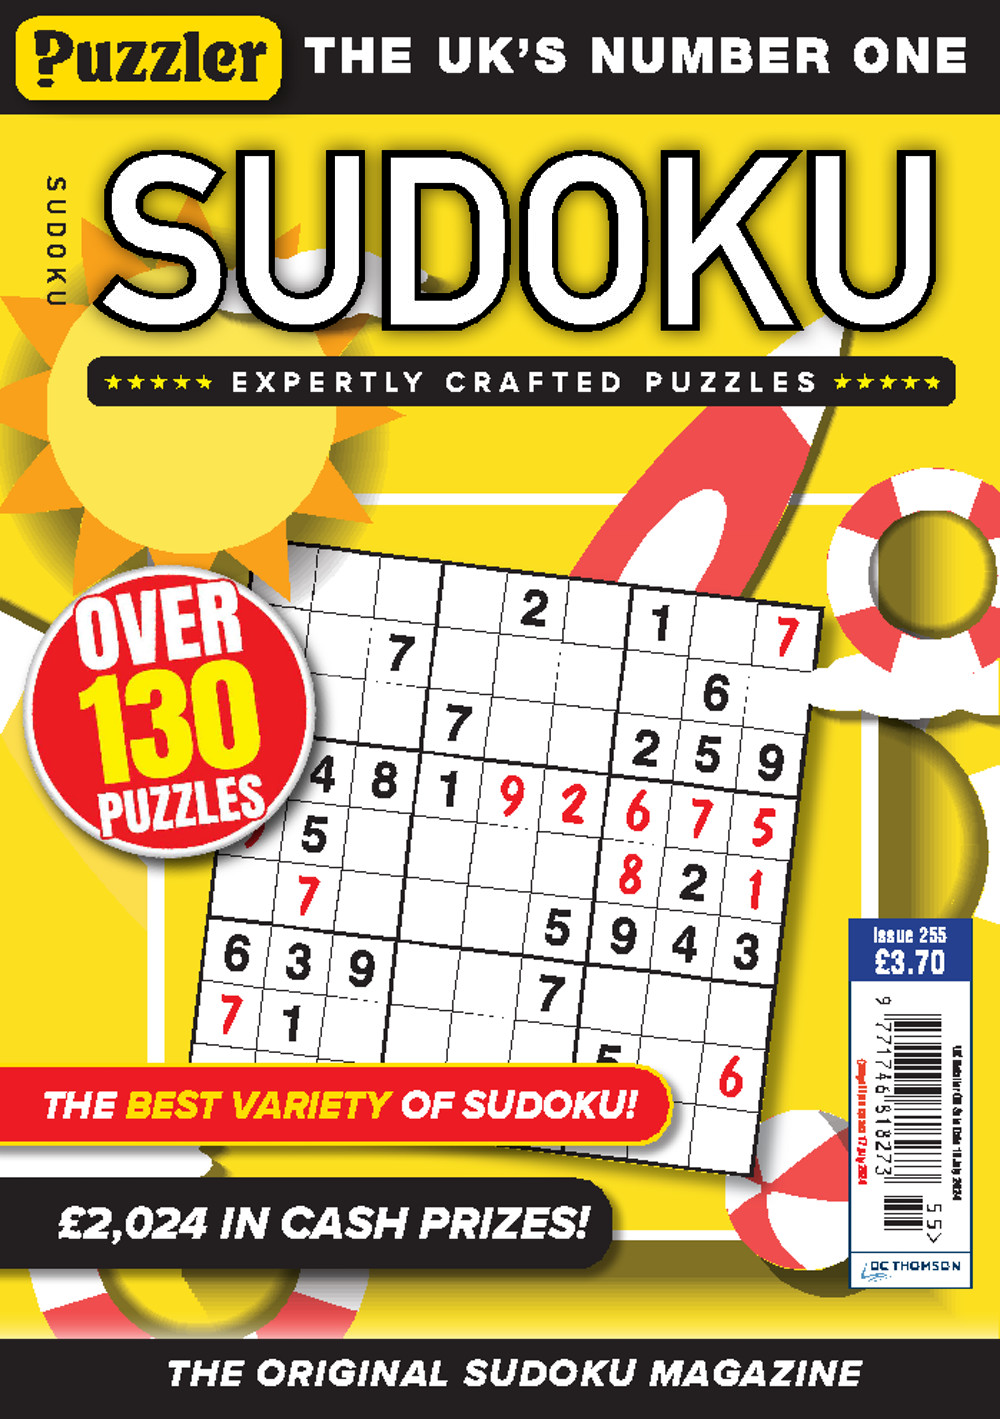 Puzzler Killer Sudoku Magazine Subscrição - Revistas em Ingles